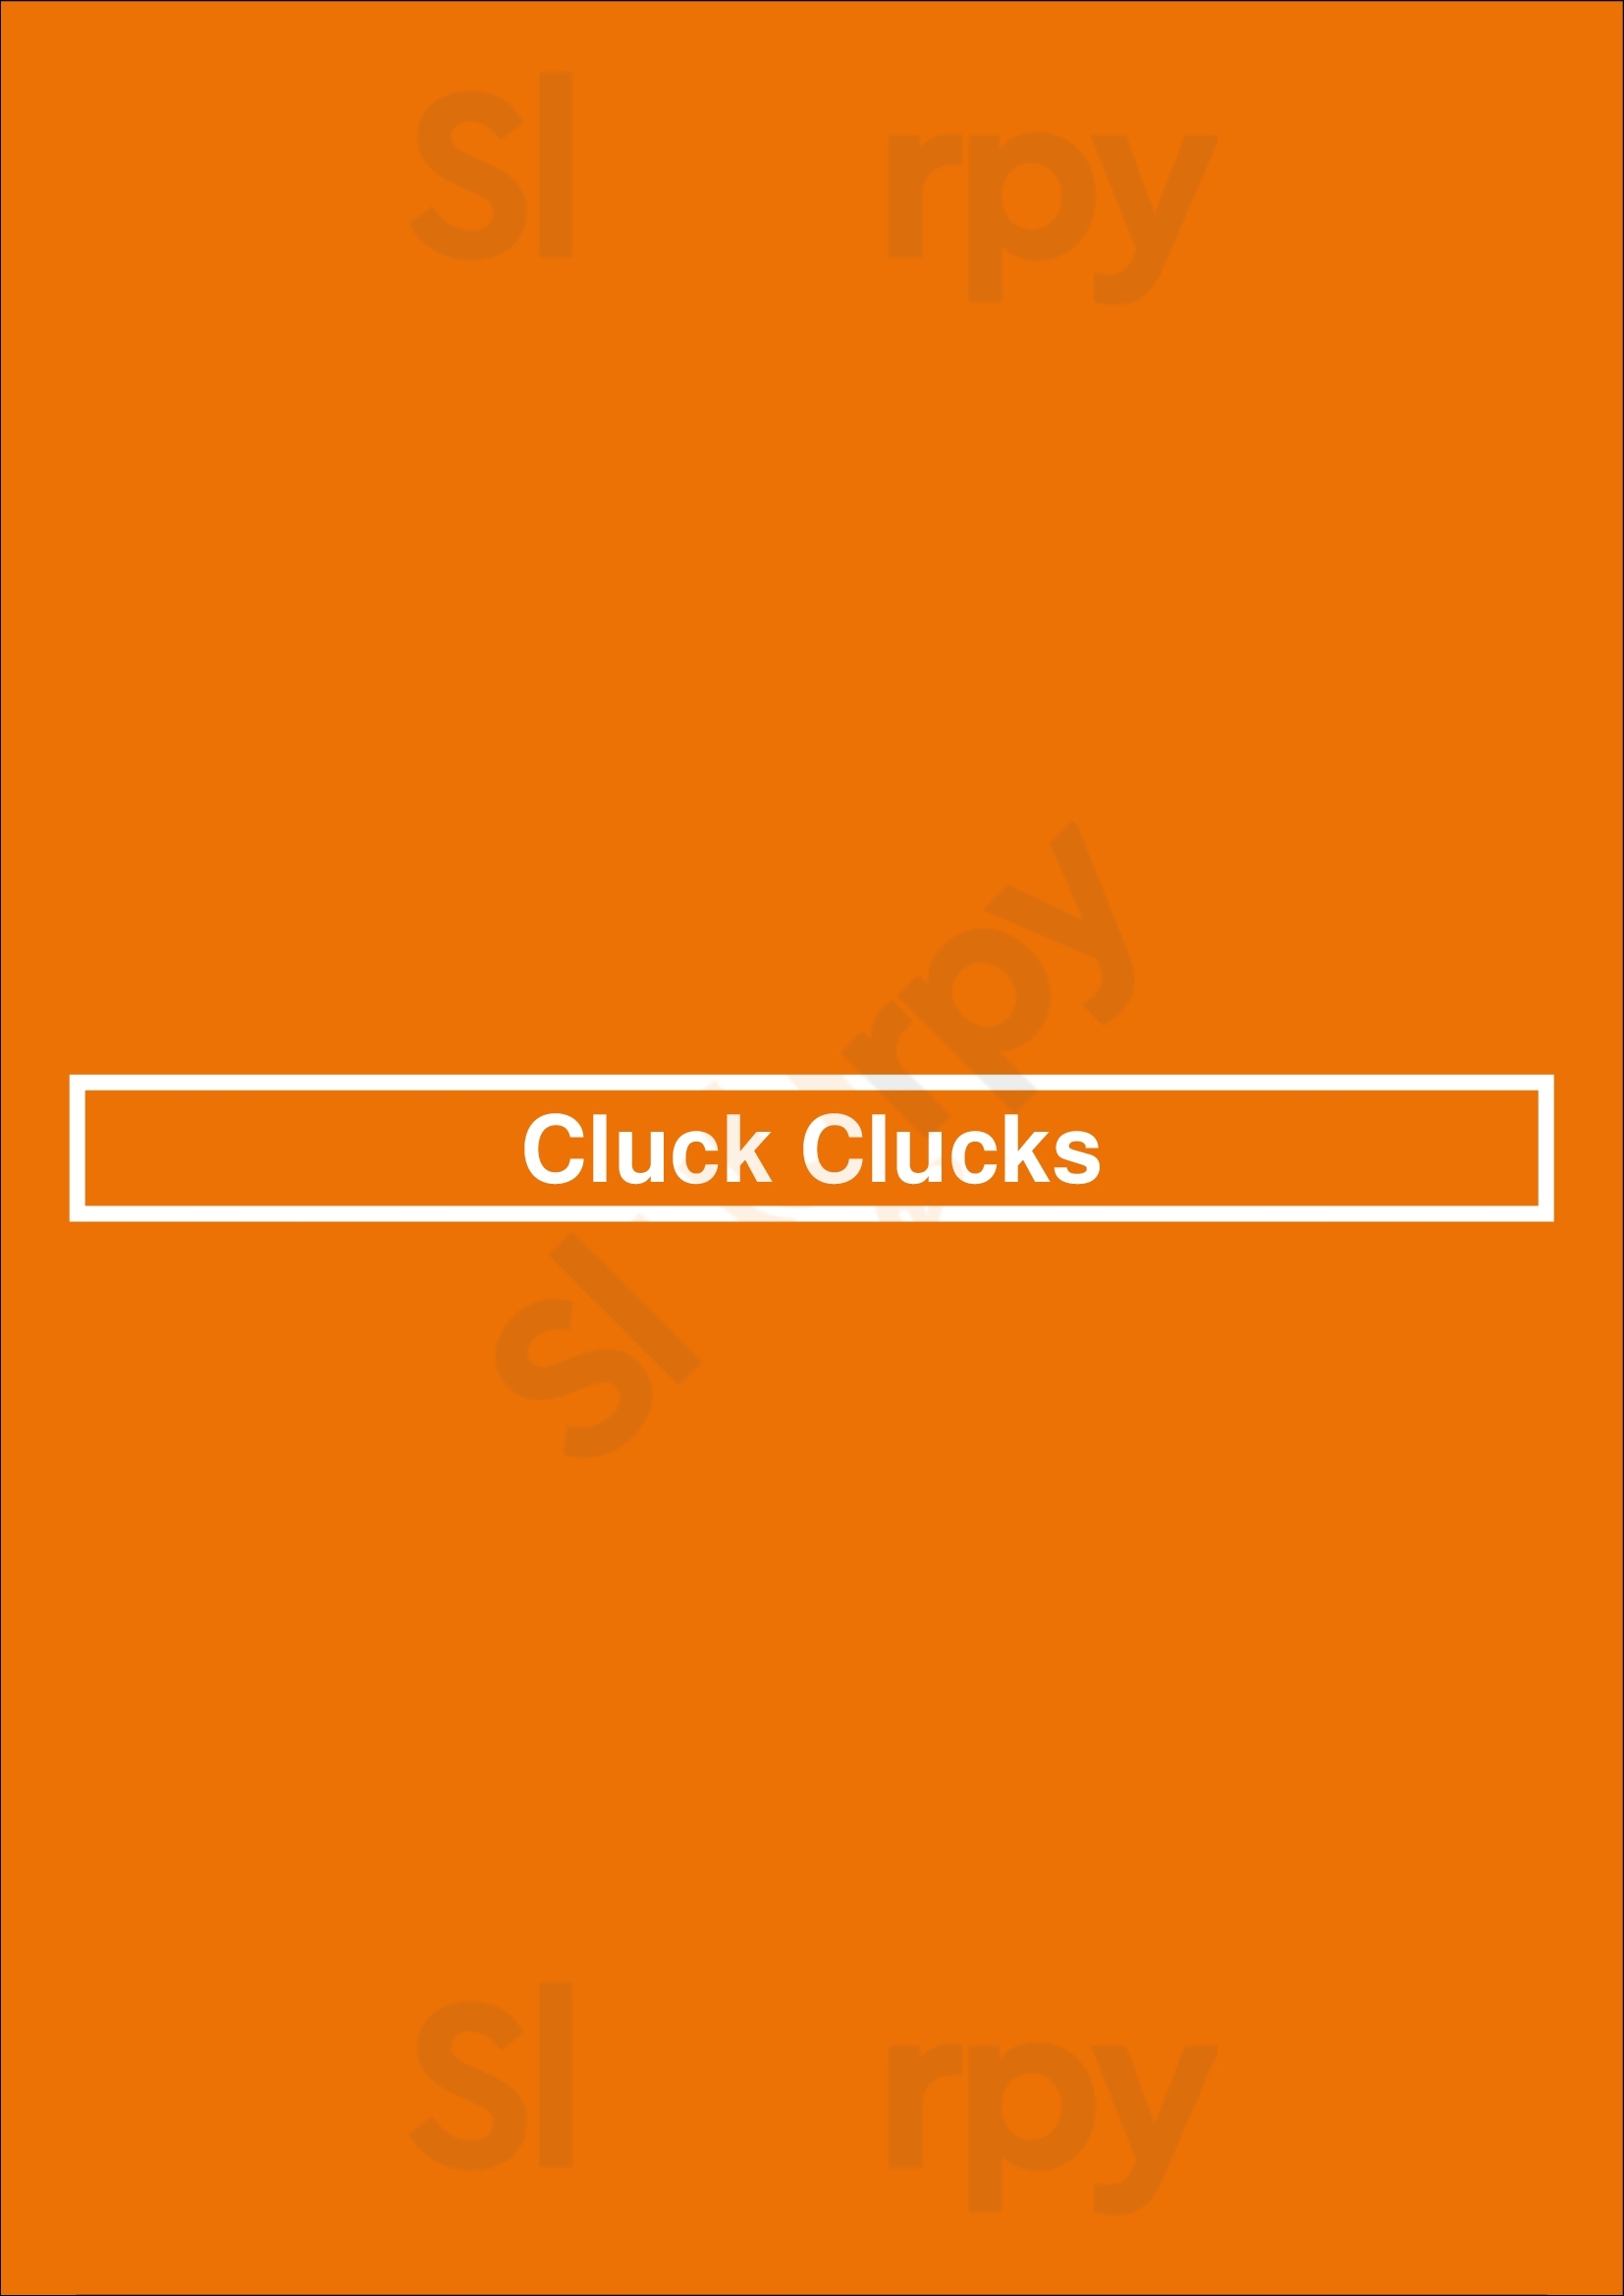 Cluck Clucks Toronto Menu - 1